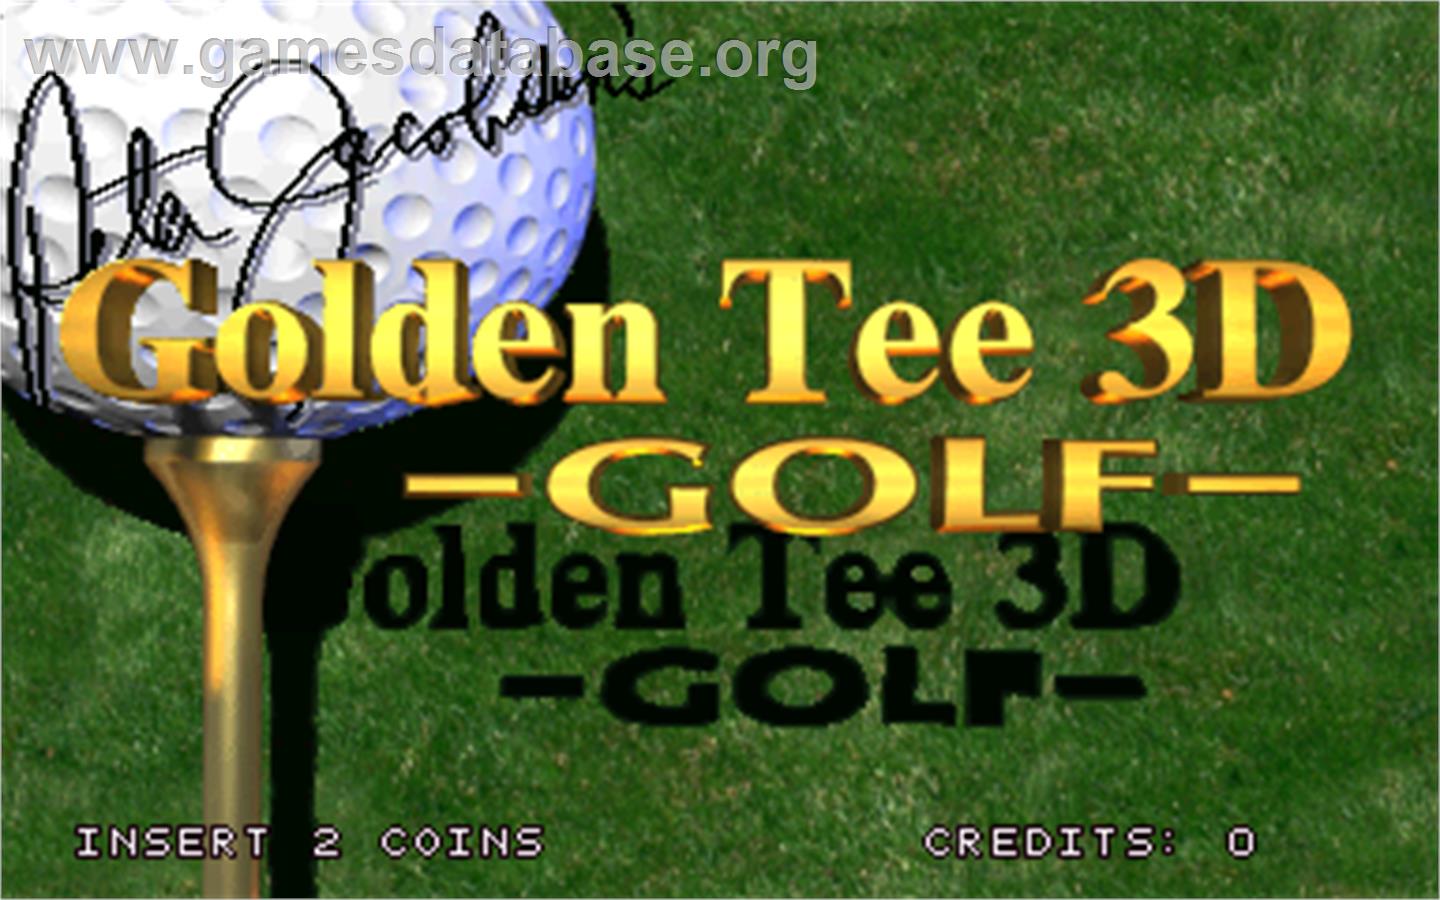 Golden Tee 3D Golf - Arcade - Artwork - Title Screen